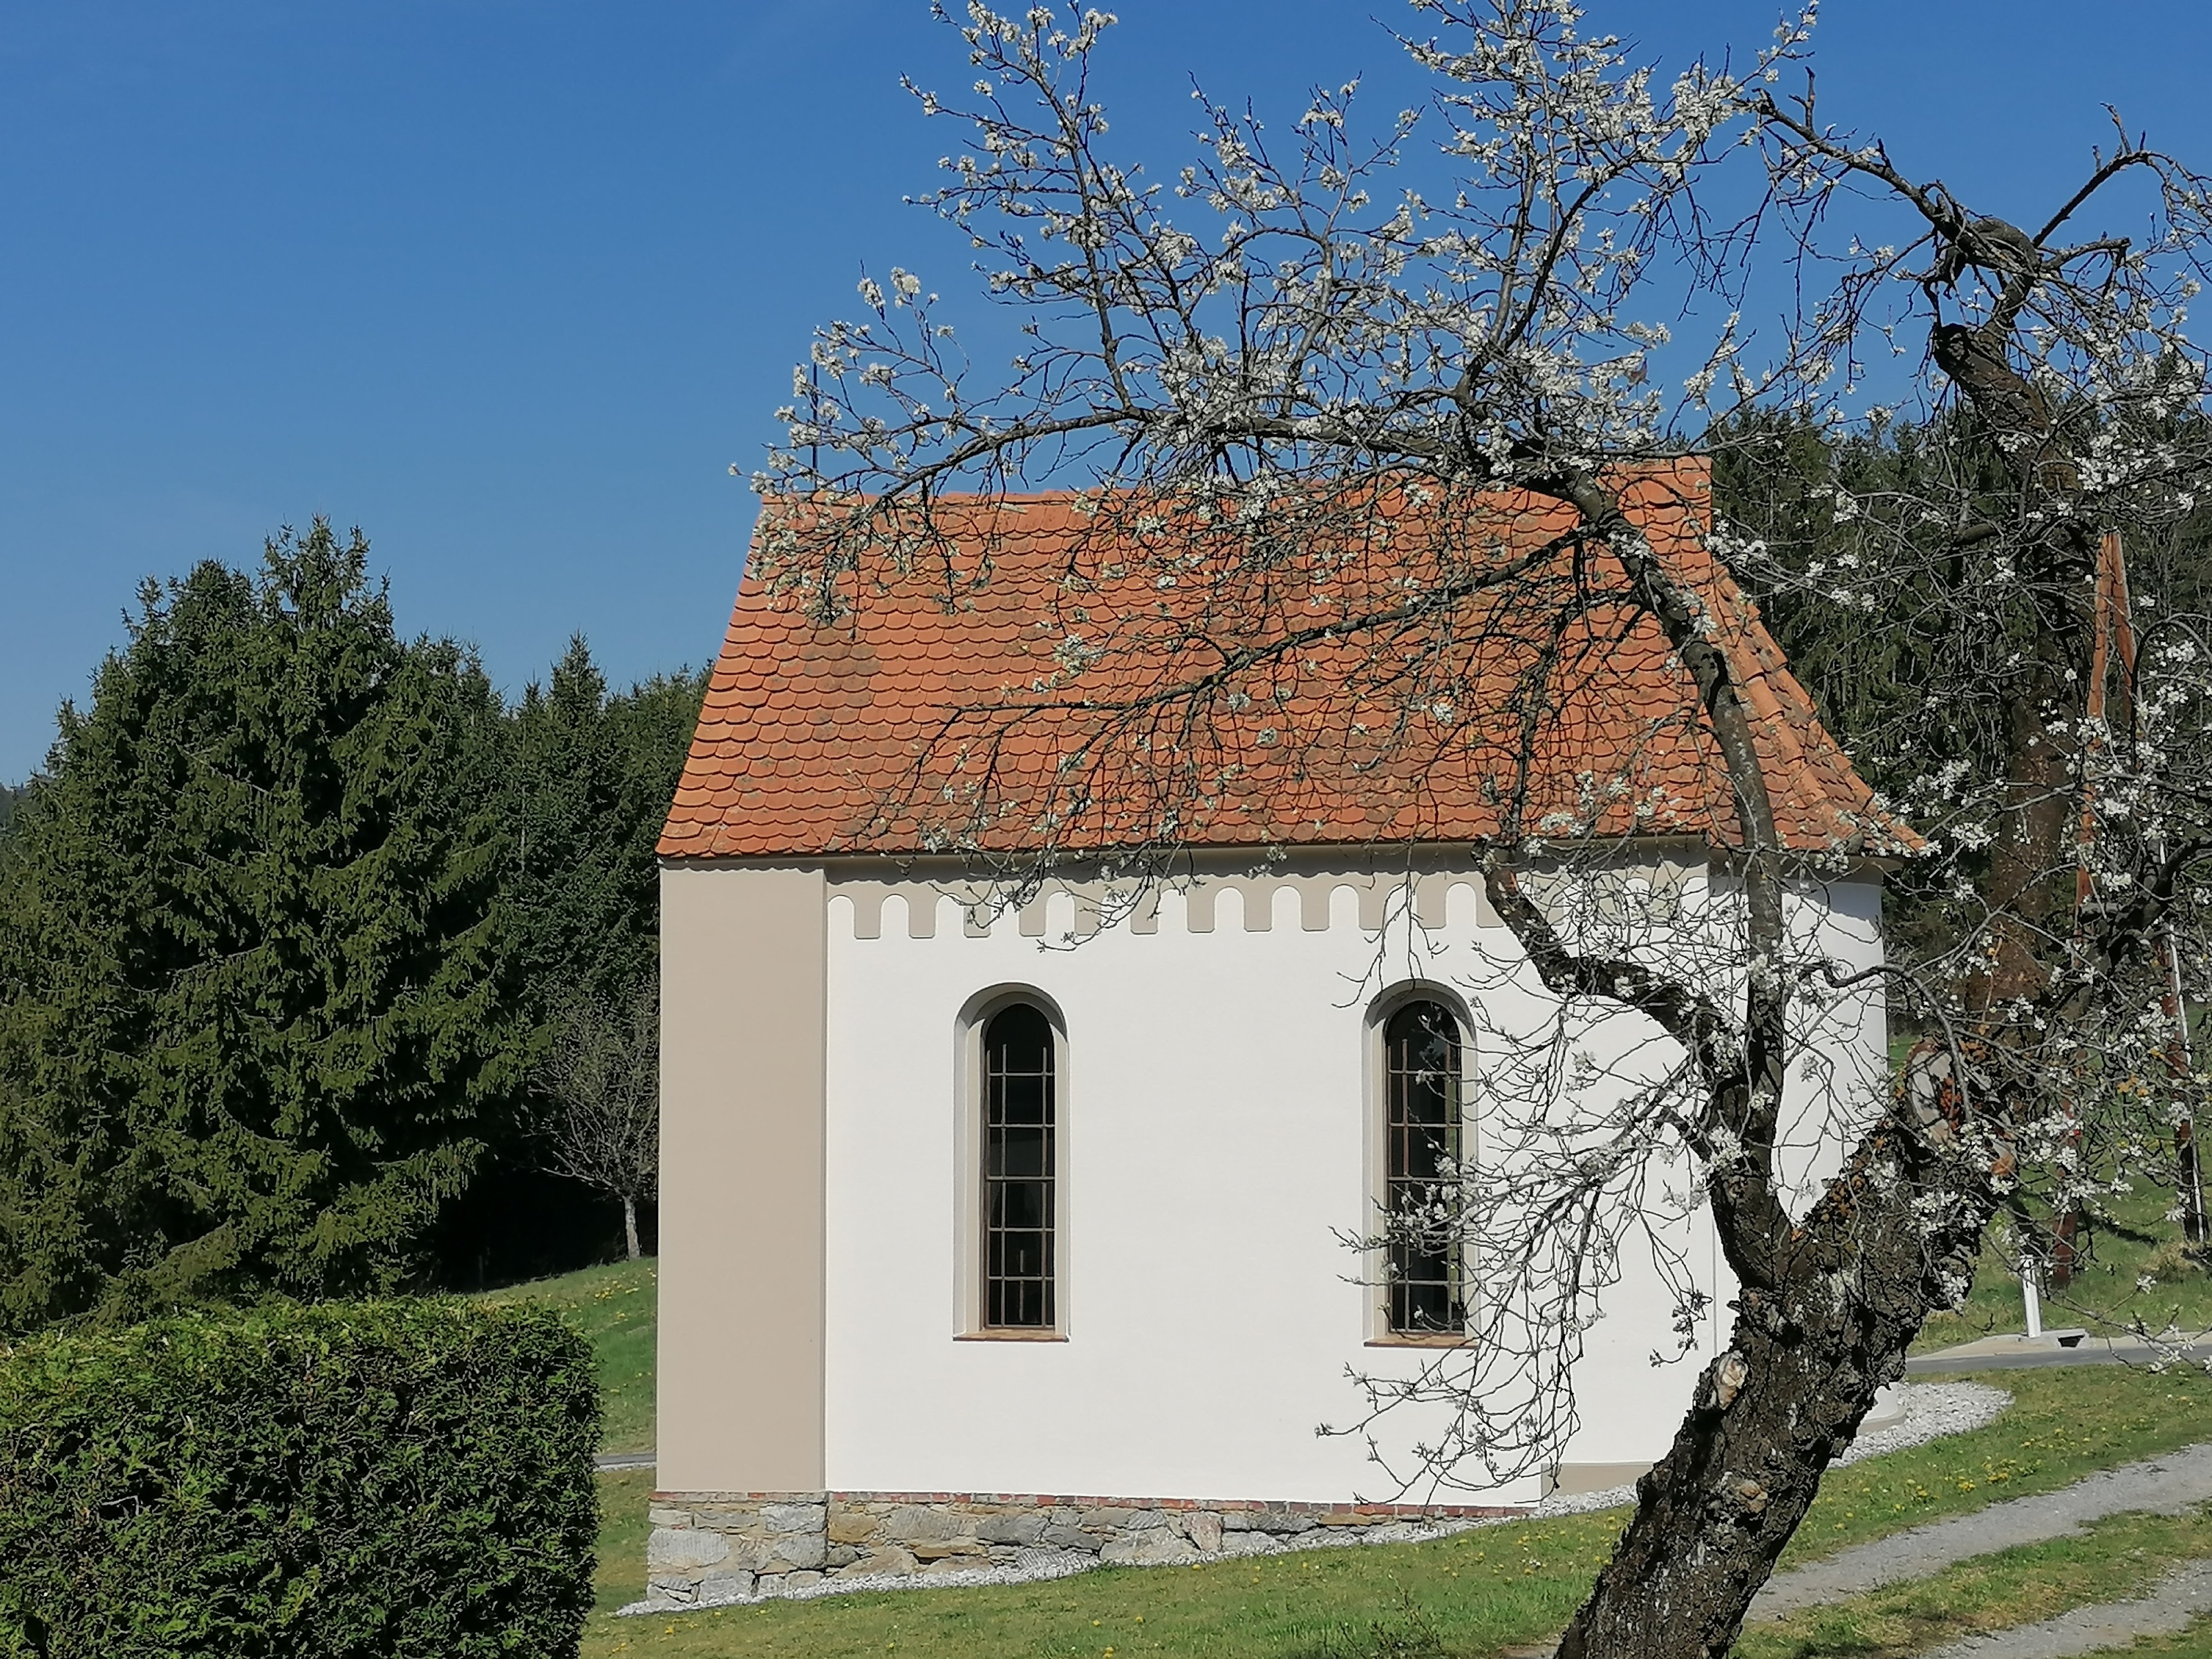 "Kulmerbauerkapelle", St. Bartholomä